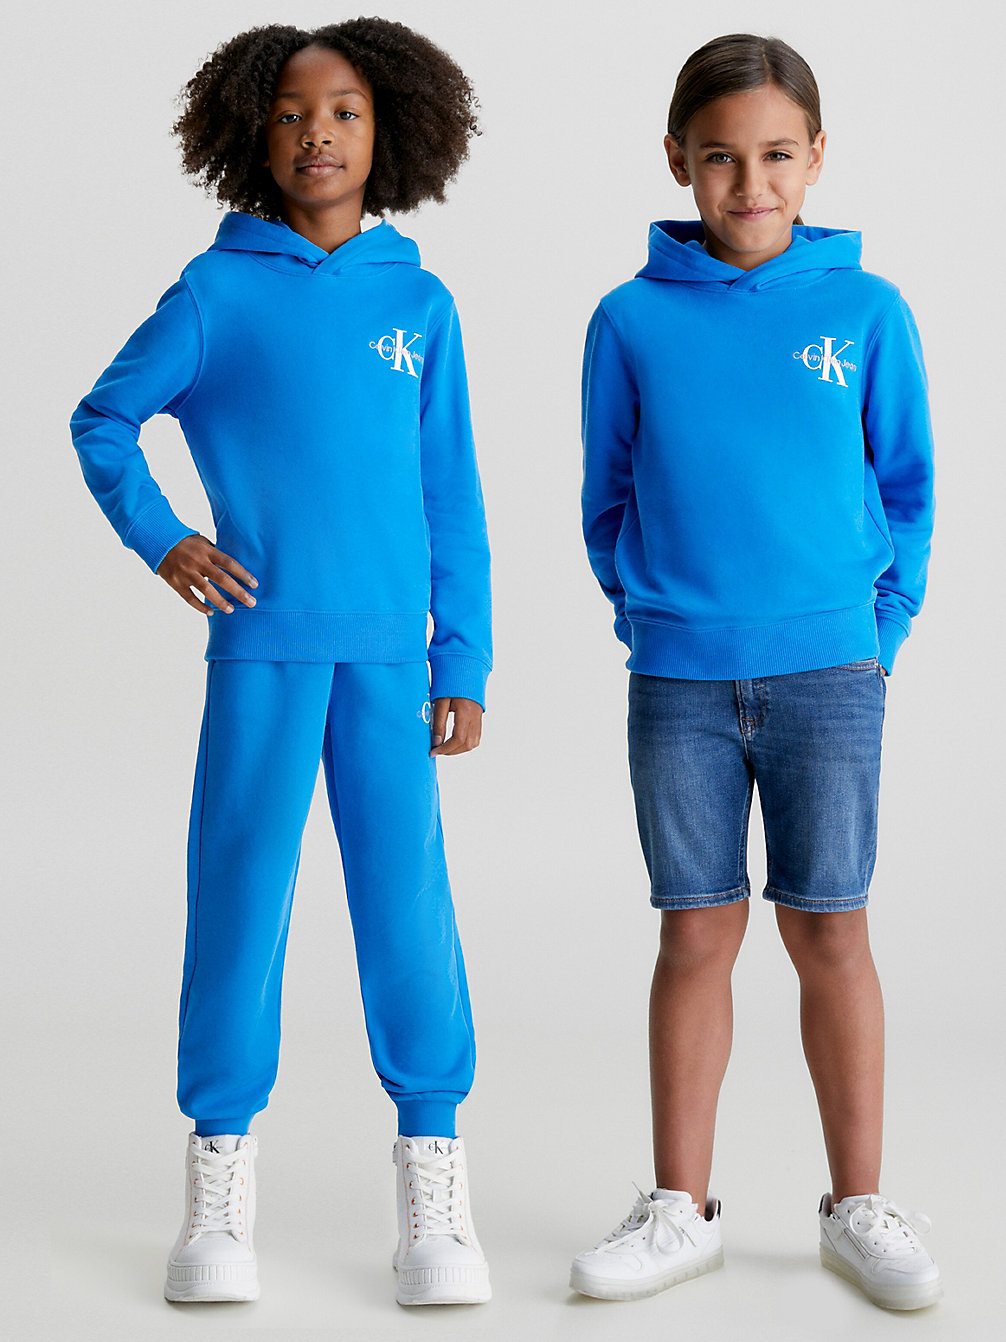 CORRIB RIVER BLUE Hoodie Van Biologisch Katoen Met Logo Voor Kinderen undefined kids unisex Calvin Klein